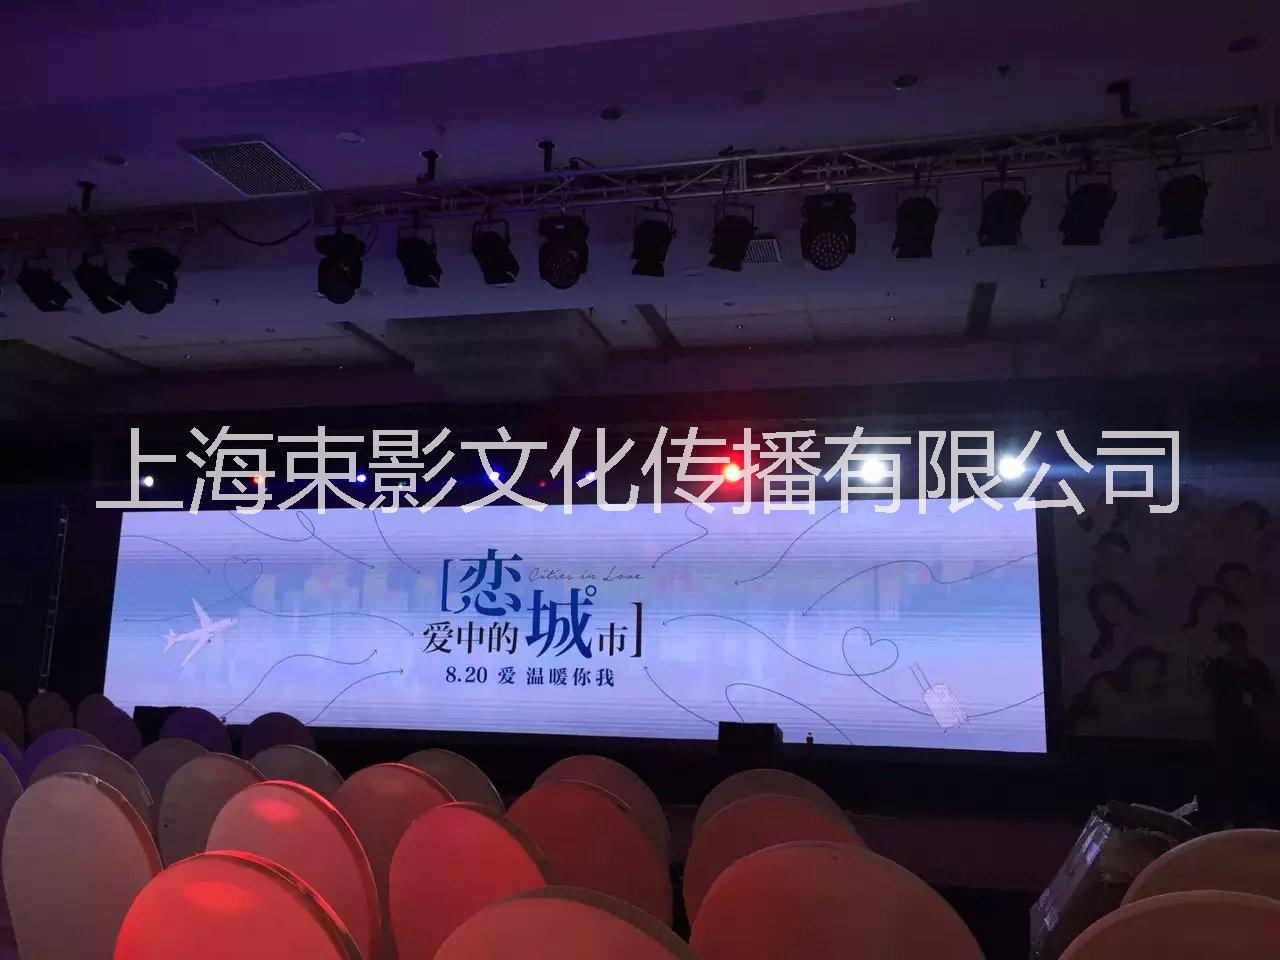 供应上海服装发布会电脑灯 logo灯租赁